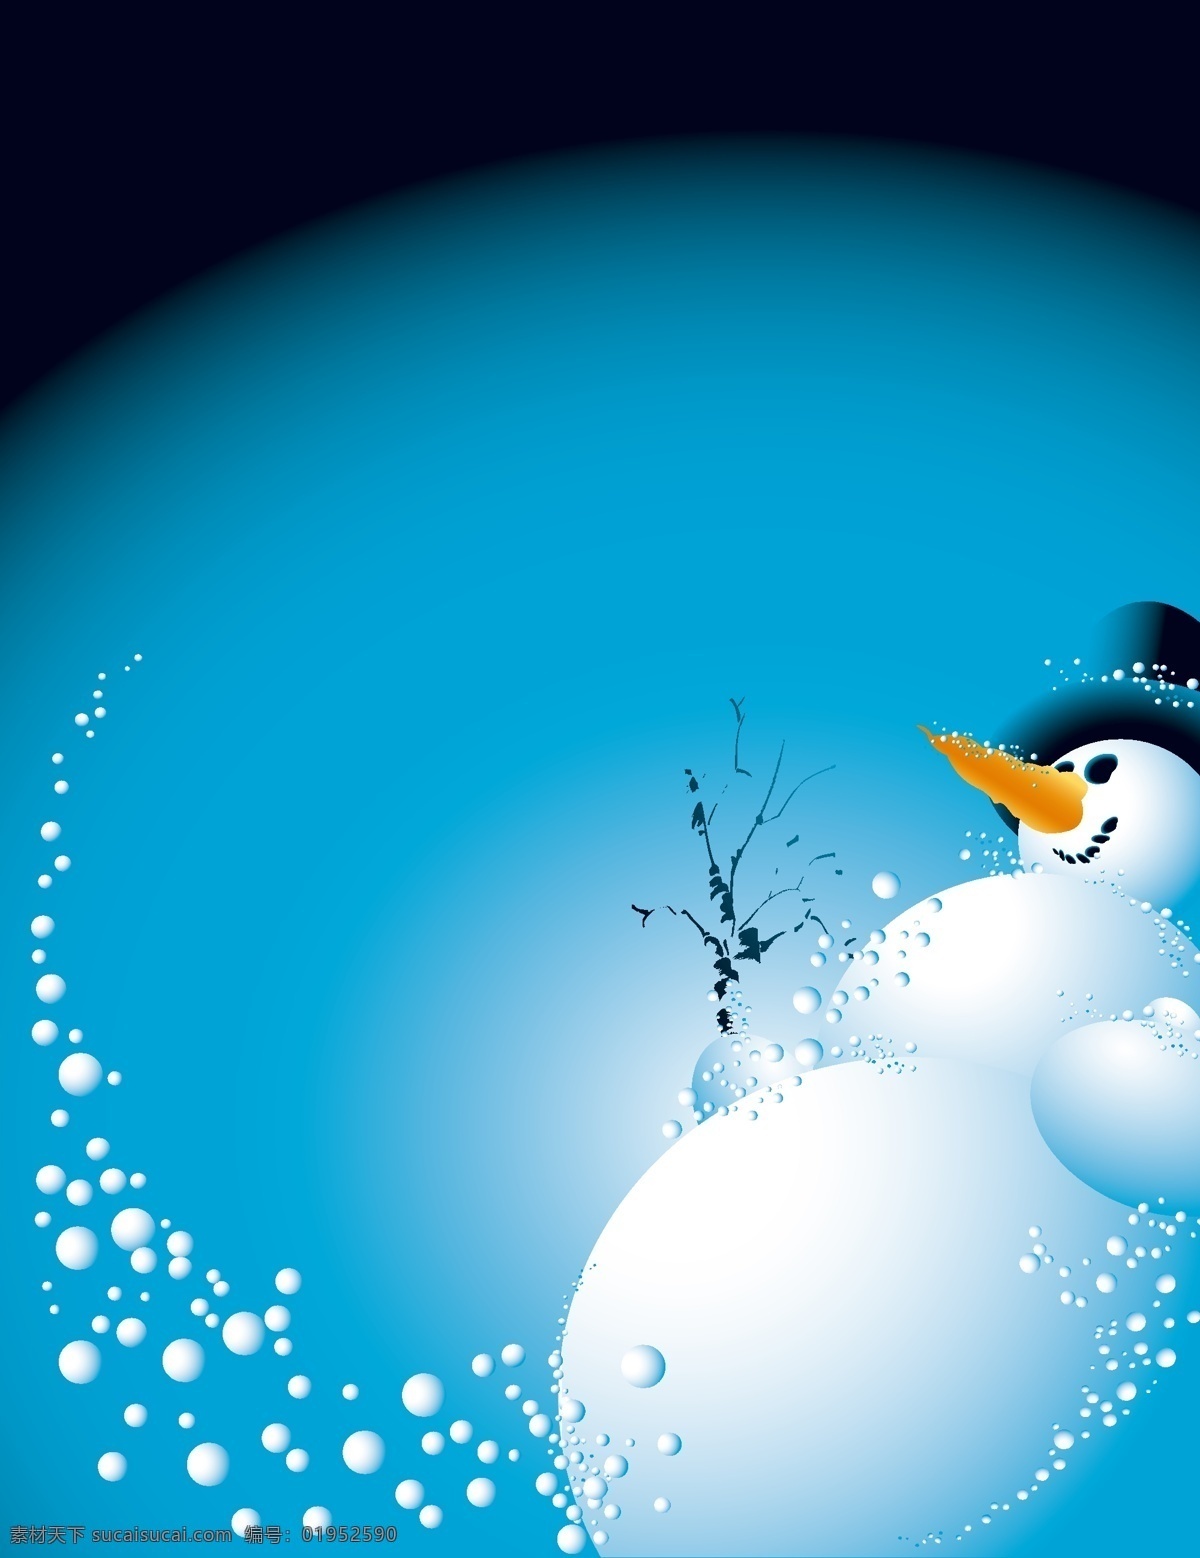 矢量 质感 雪人 圣诞节 背景 蓝色 星空 卡通 冬天 海报 童趣 手绘